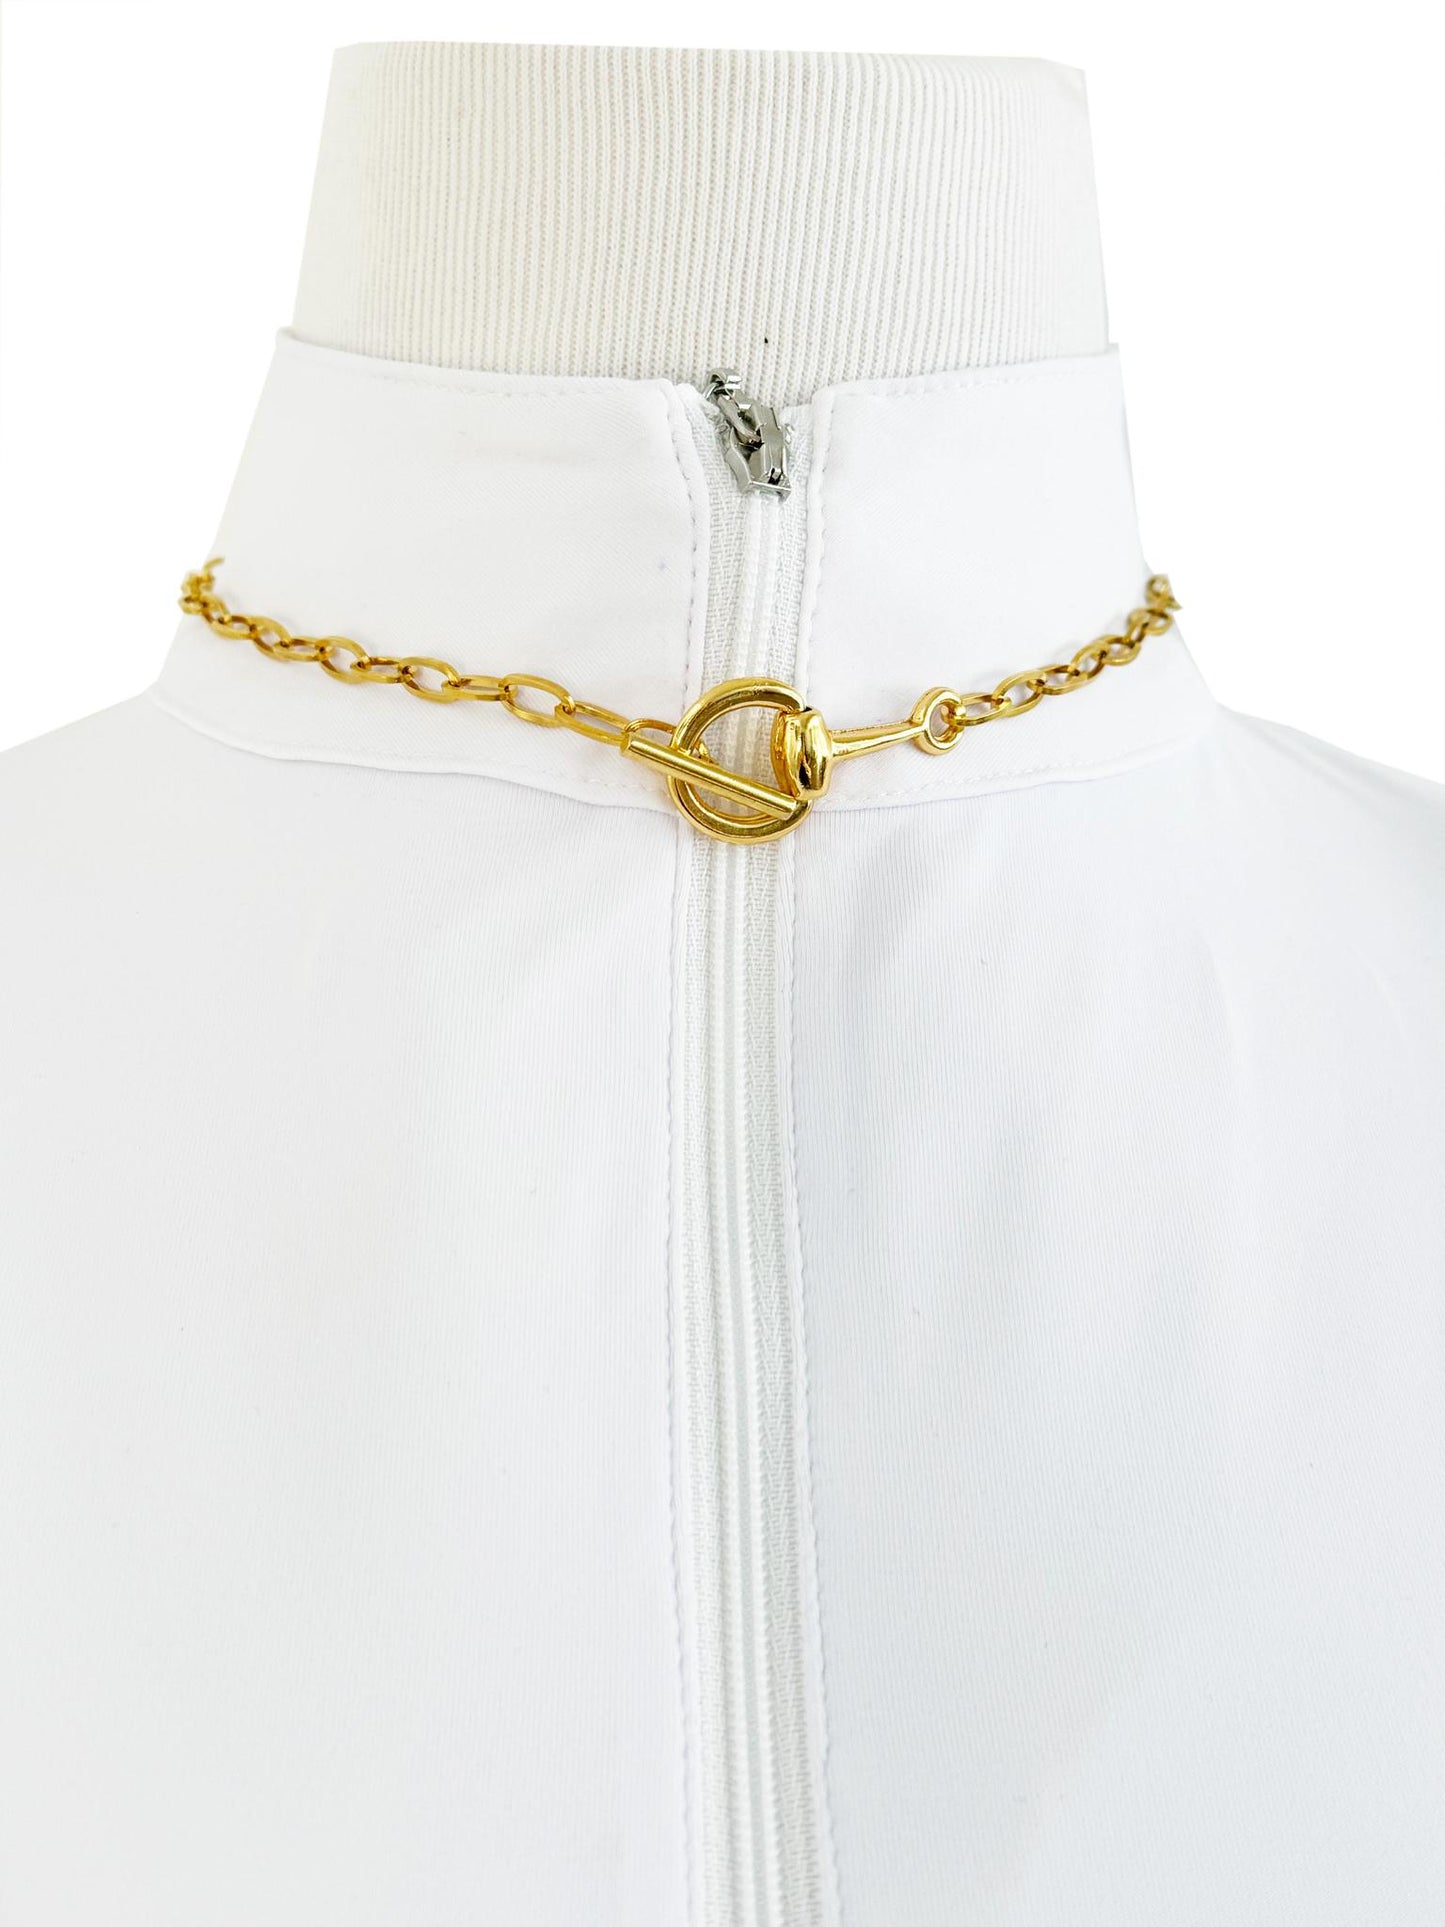 V2 Designs Tonal Gold Loose Link Eggbutt Snaffle Necklace